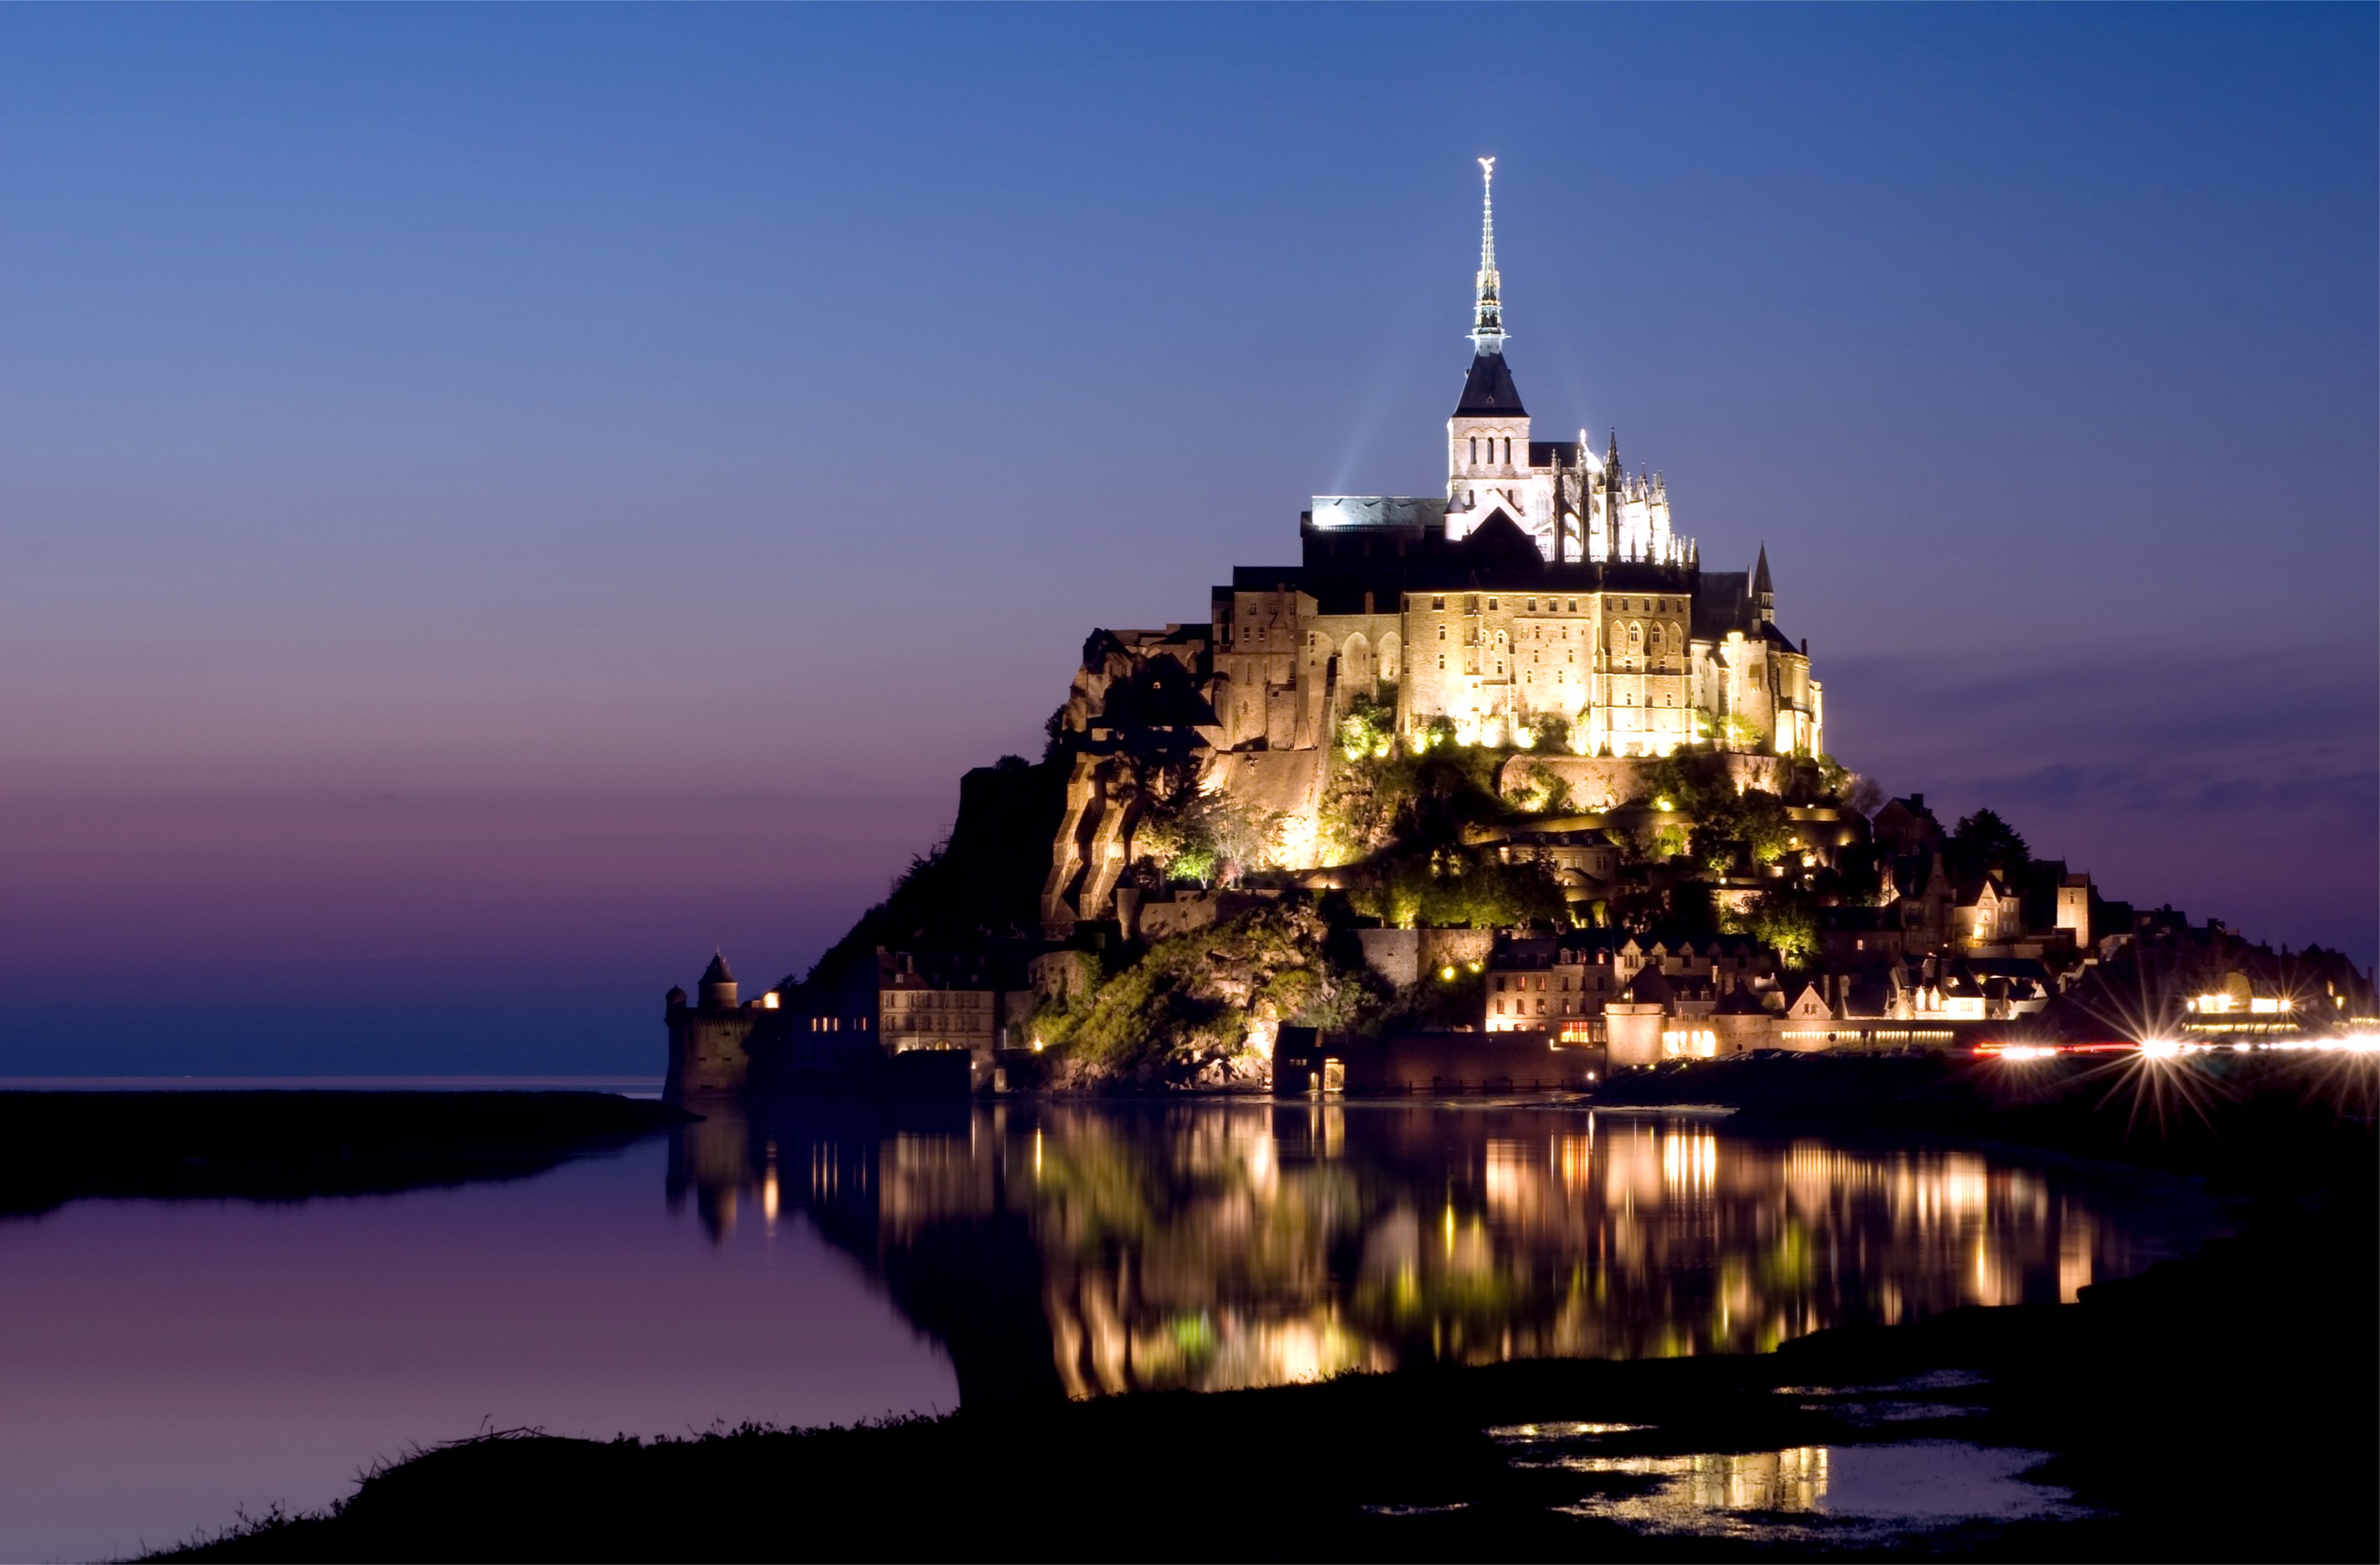 Mont Saint Michel France Sky Church Castle House Rock Evening Lights Sea Landscape Nature City Sunse 2841x1868